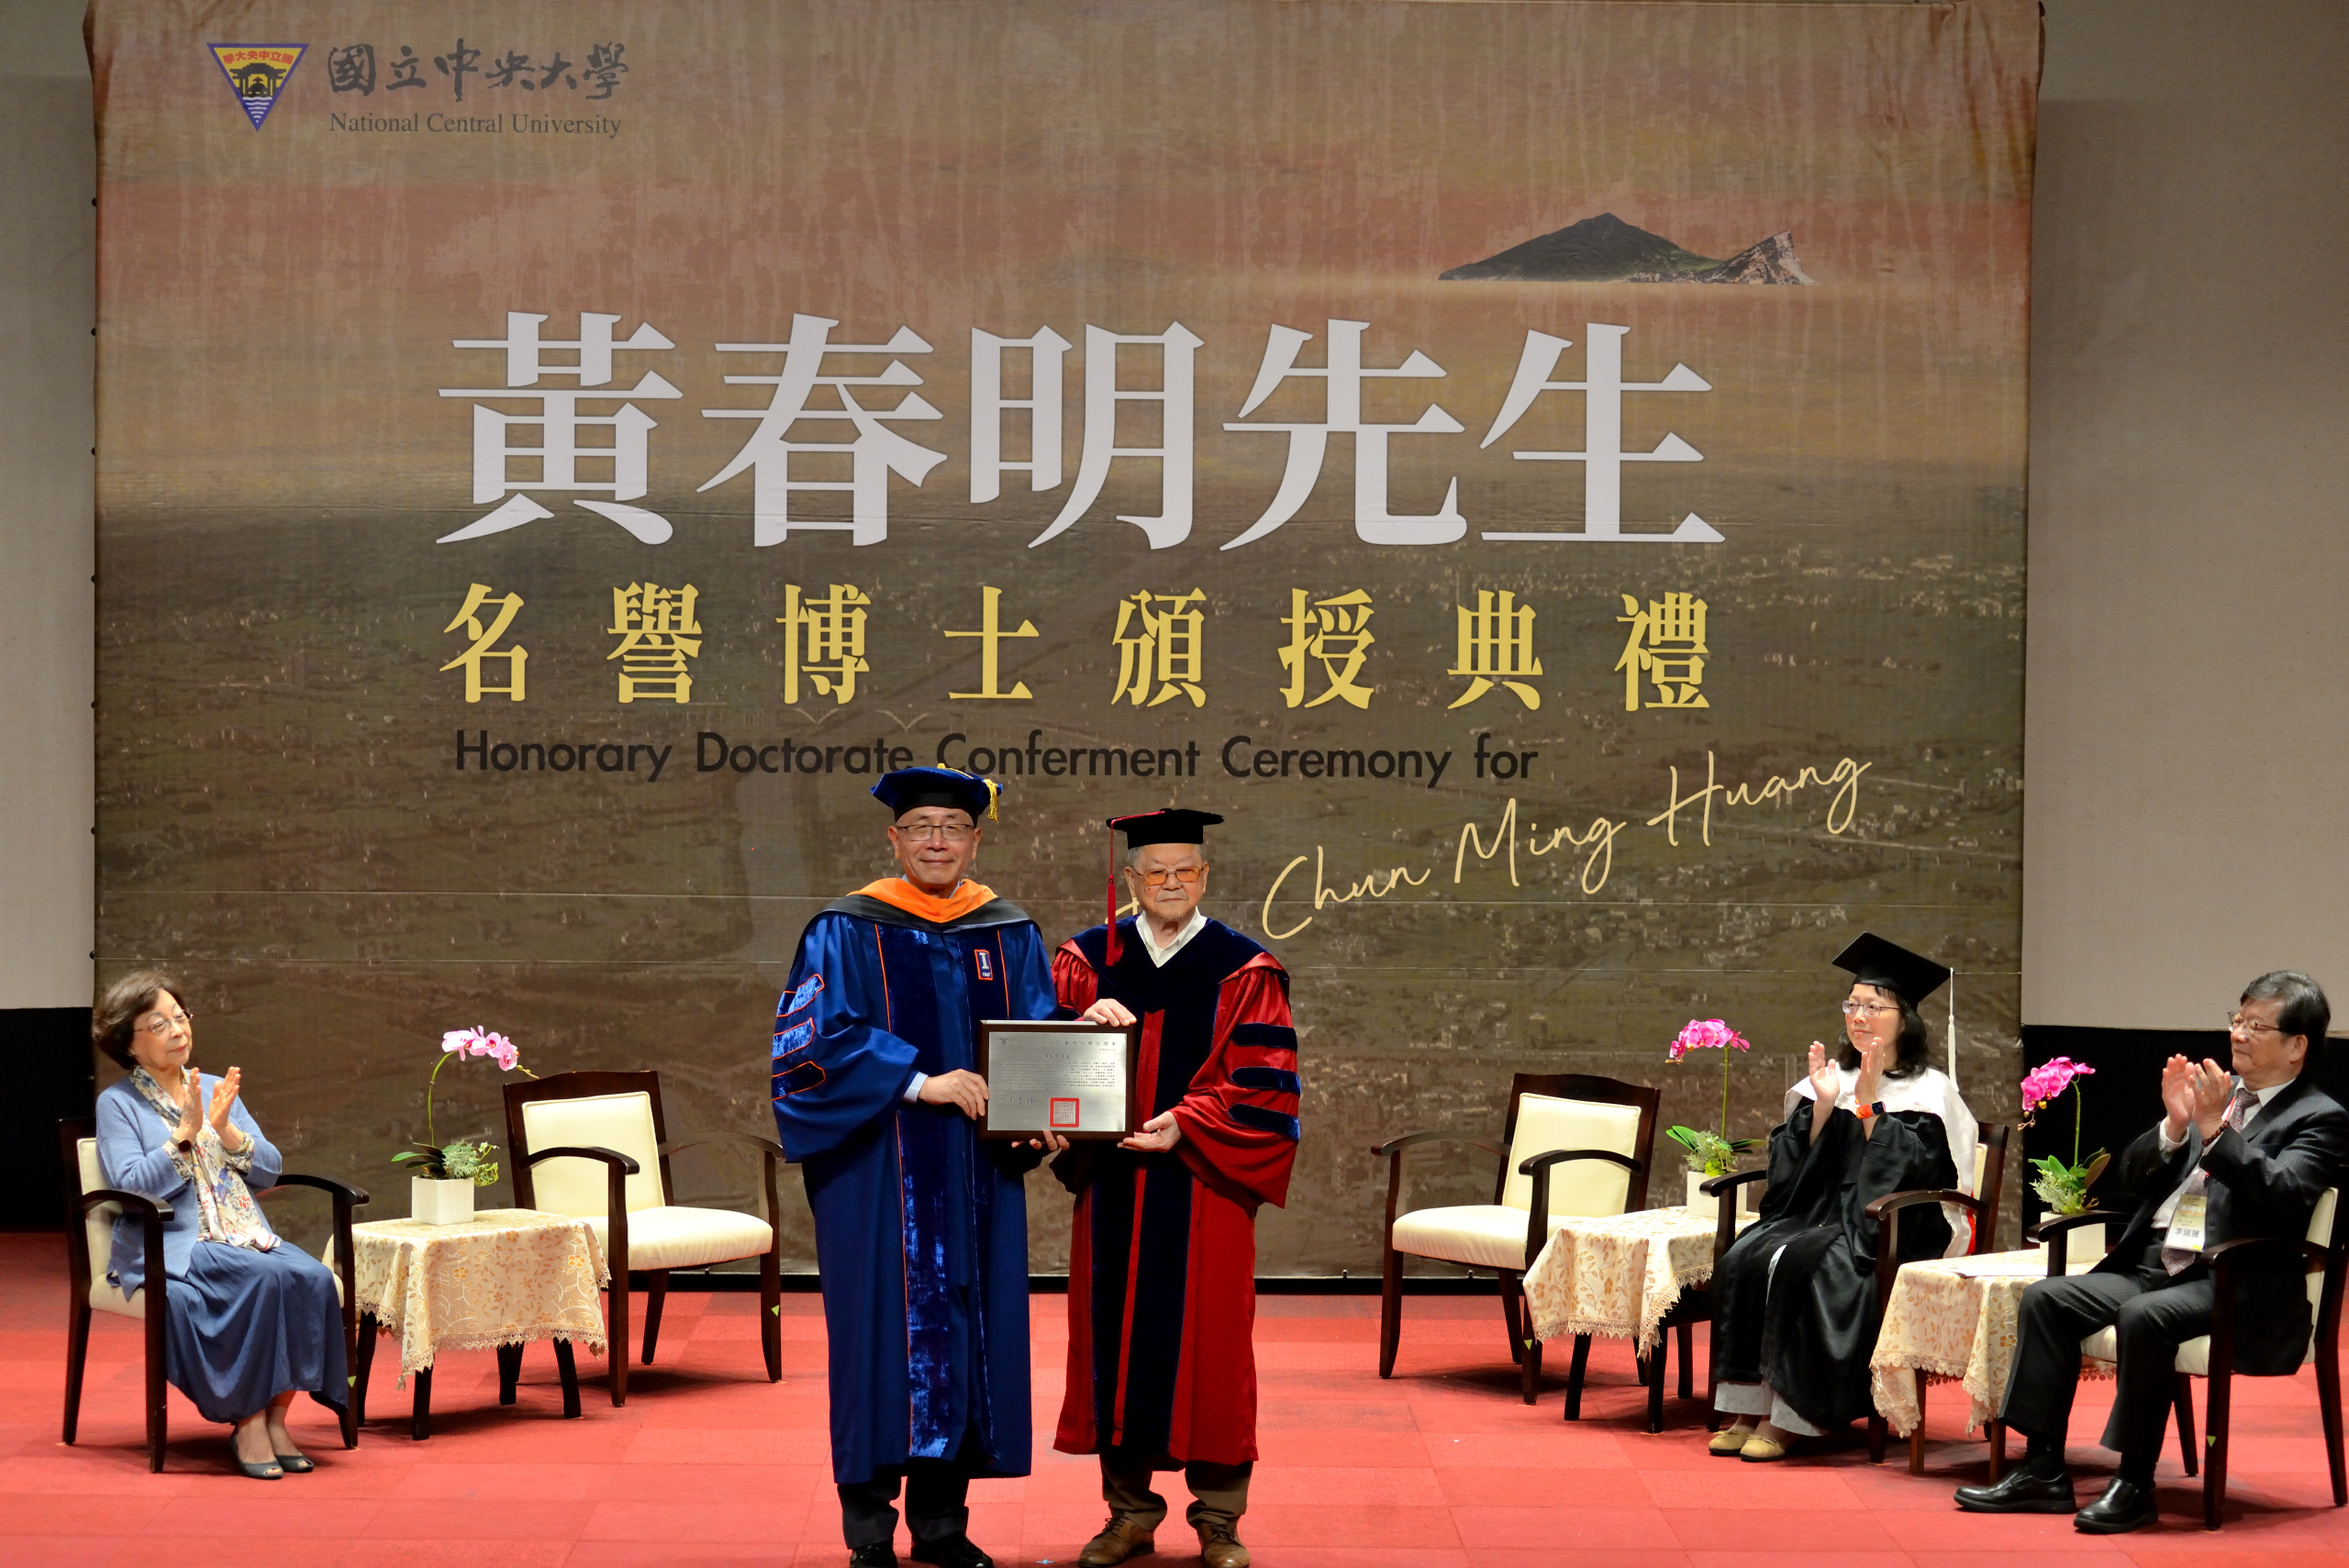 中央大學周景揚校長 (左)頒授名譽博學位證書給黃春明先生(右)，表彰其對臺灣文壇重要貢獻。照片秘書室提供